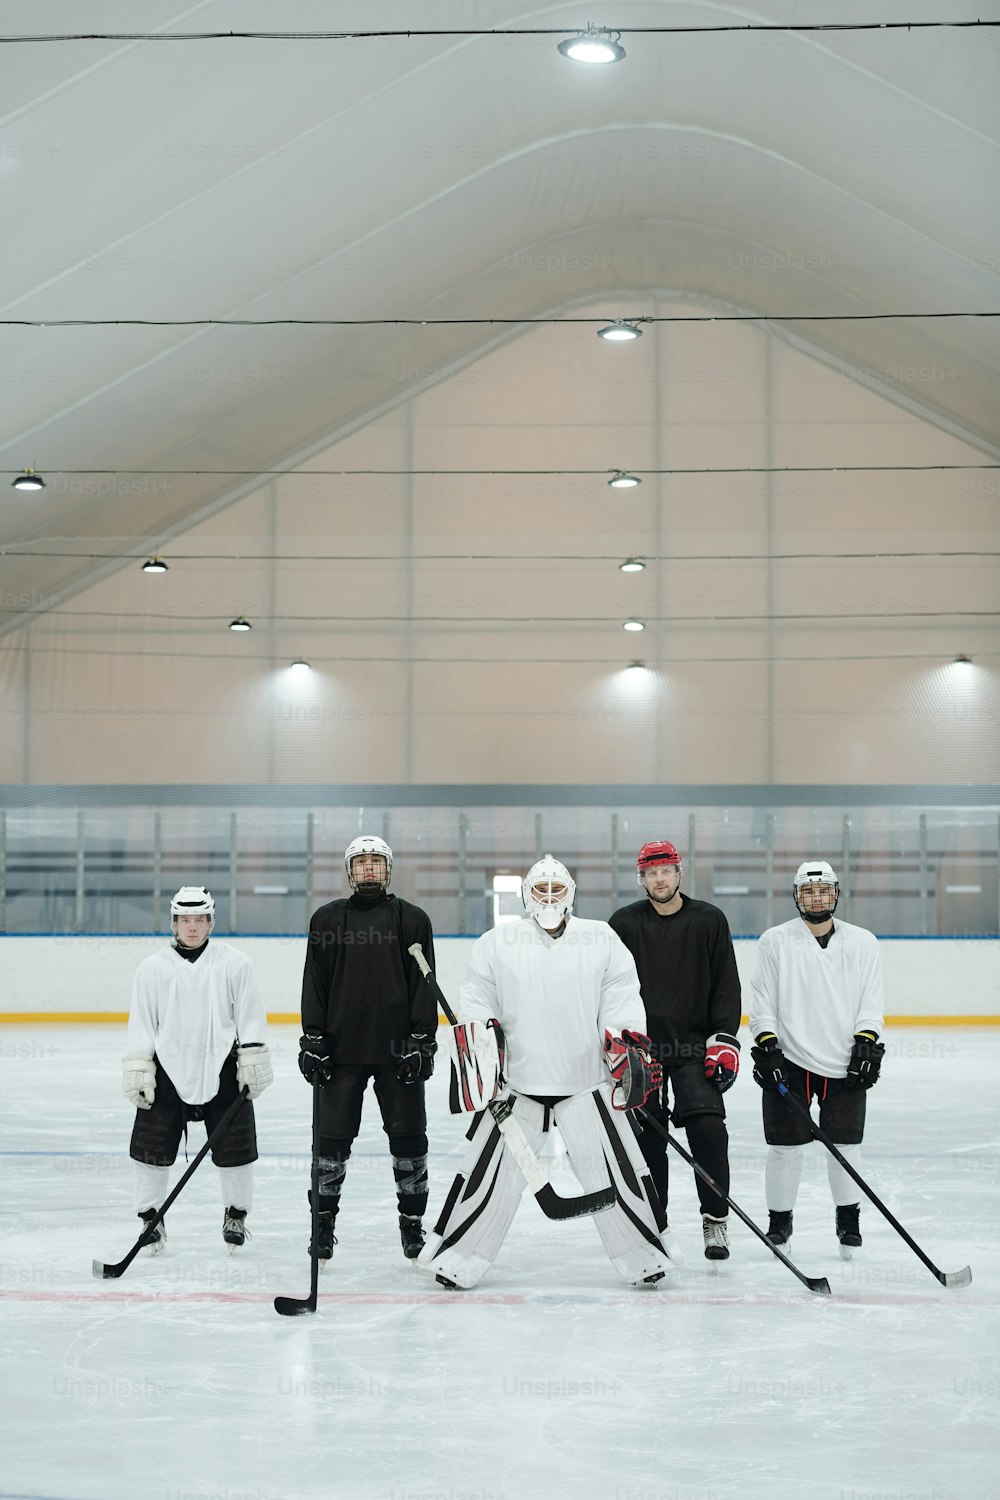 スポーツユニフォーム、グローブ、スケート靴、保護ヘルメットを身に着けたホッケー選手とそのトレーナーがアイスリンクに立ってプレーを待っているグループ